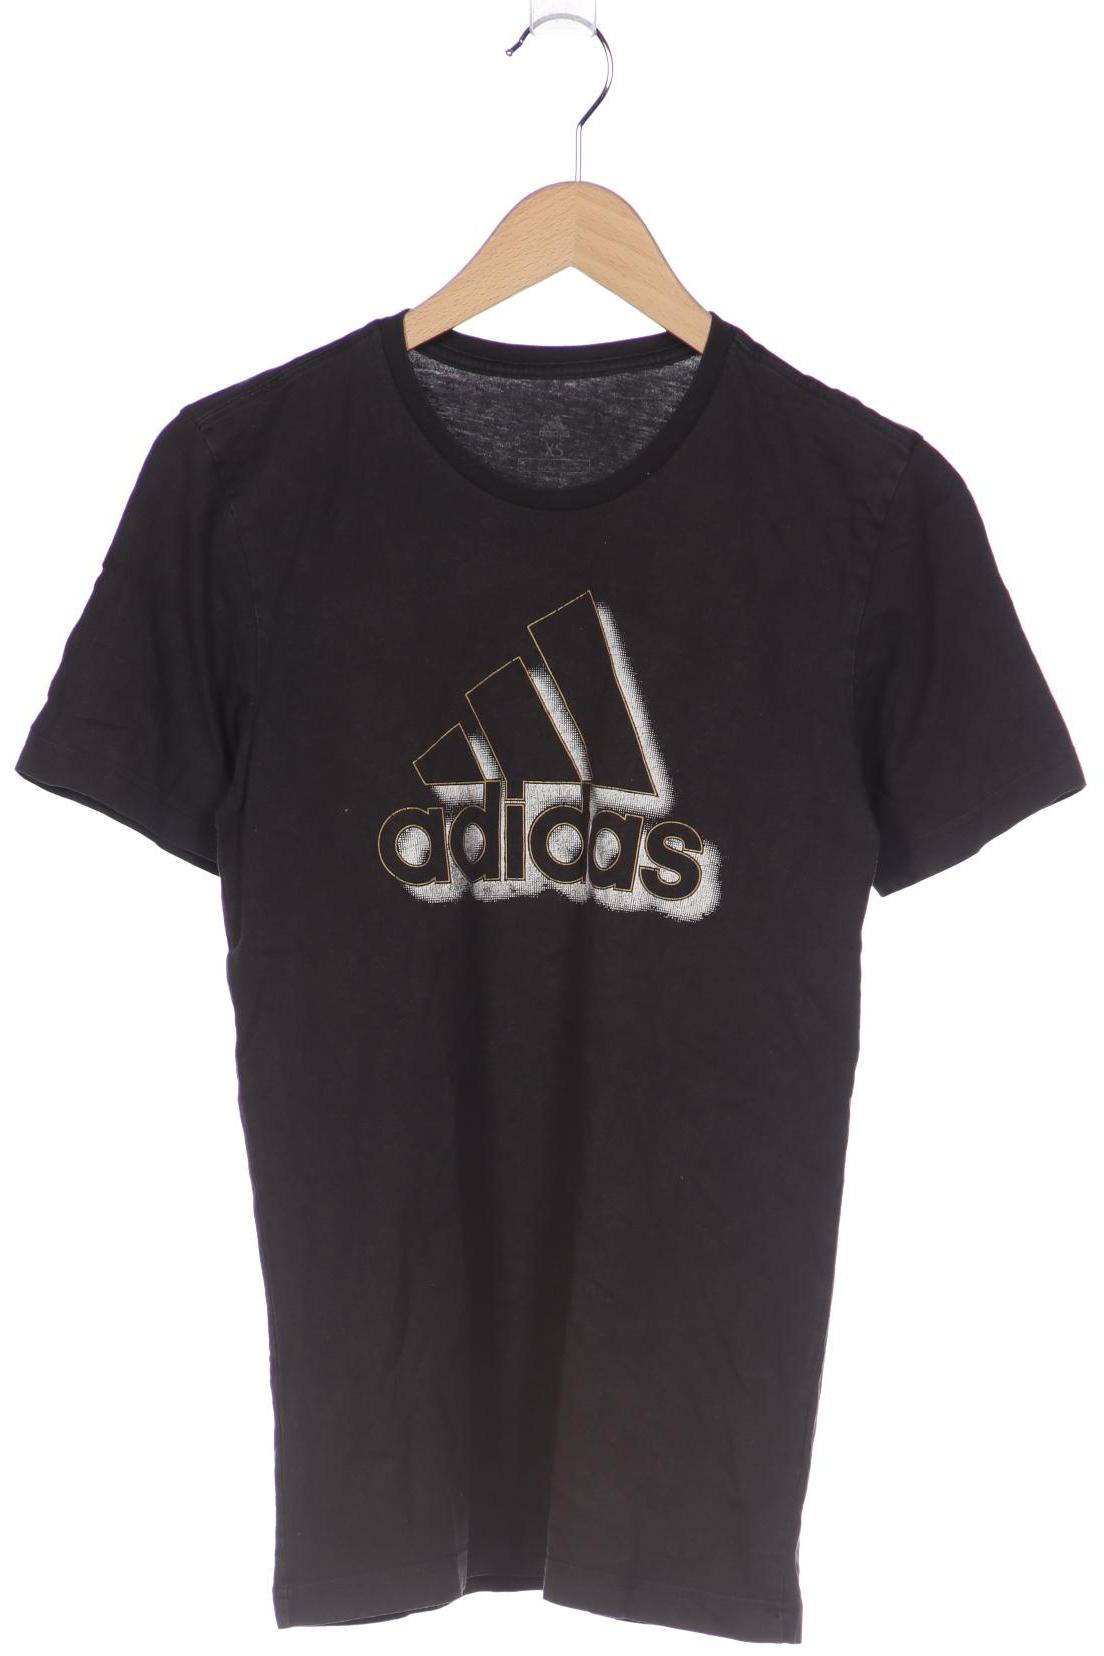 adidas Herren T-Shirt, schwarz von Adidas